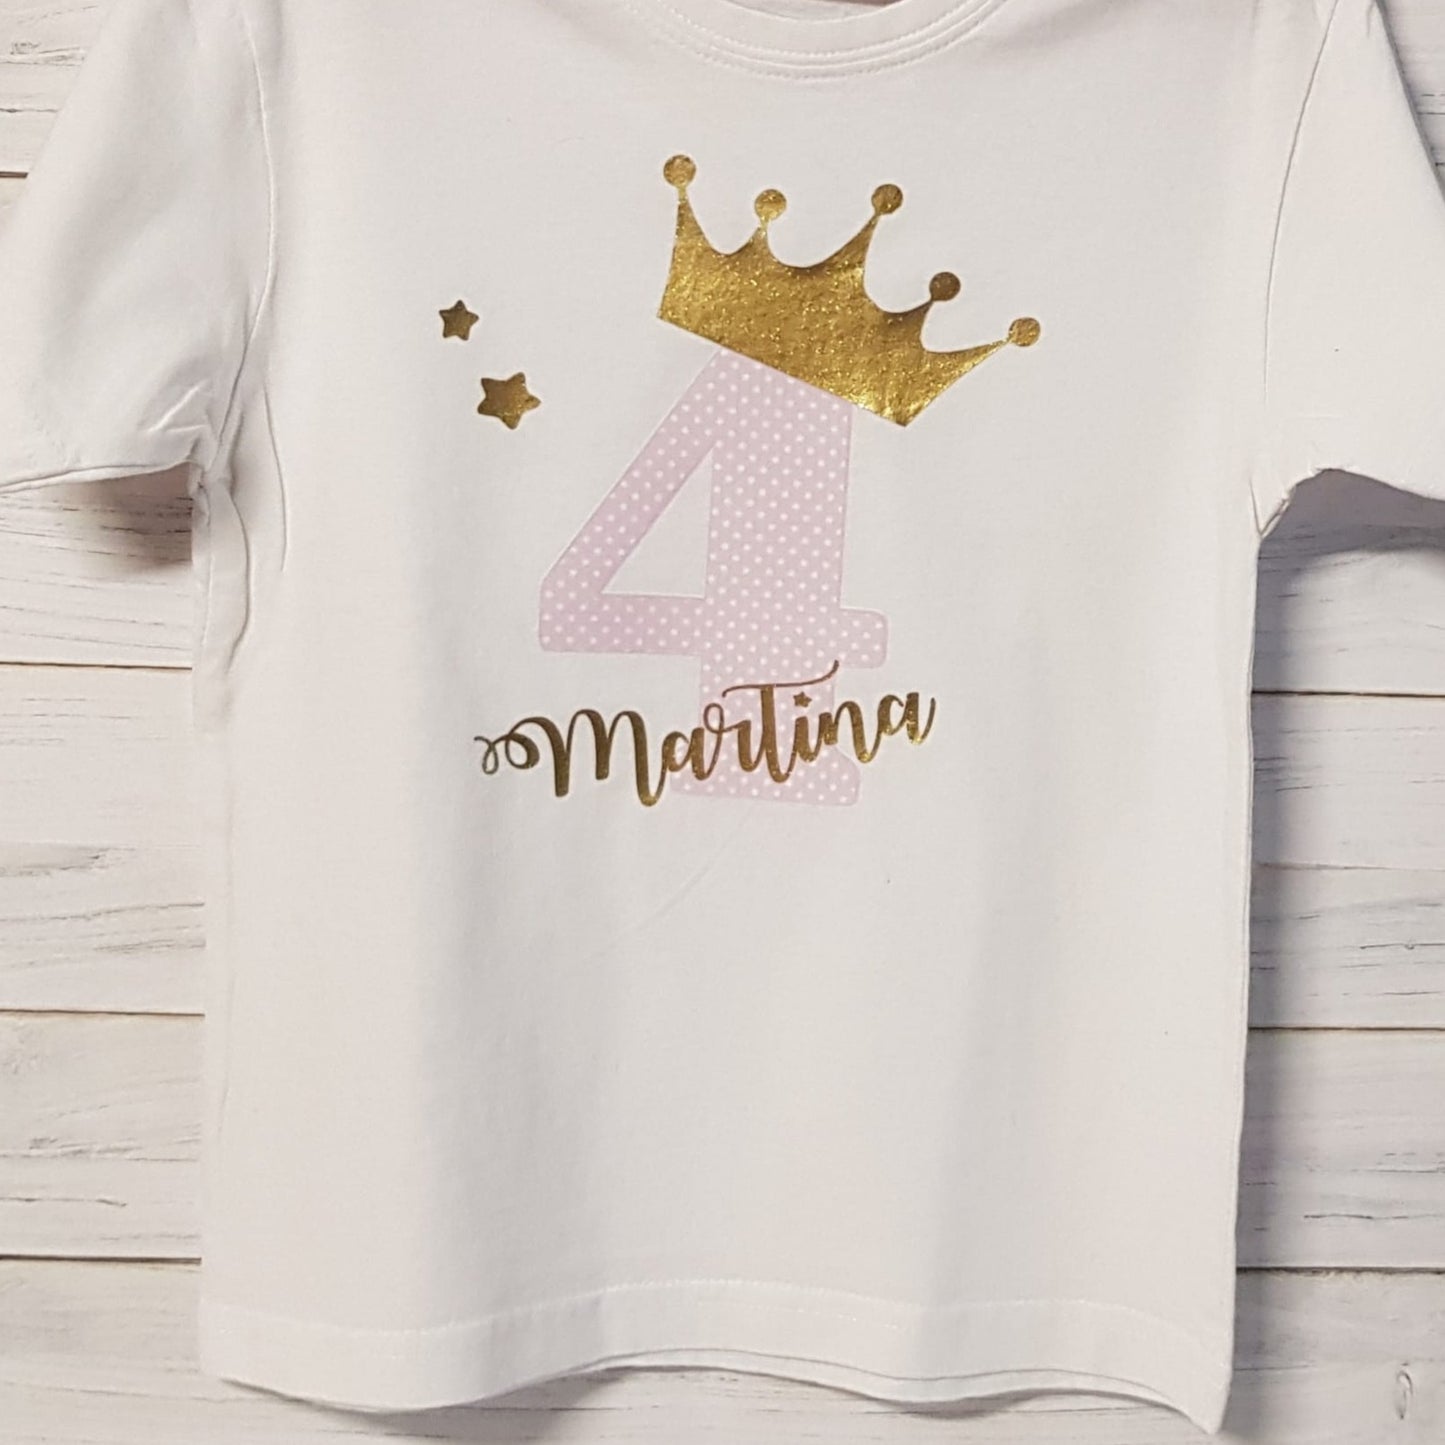 Camiseta para cumpleaños con diseño corona grande